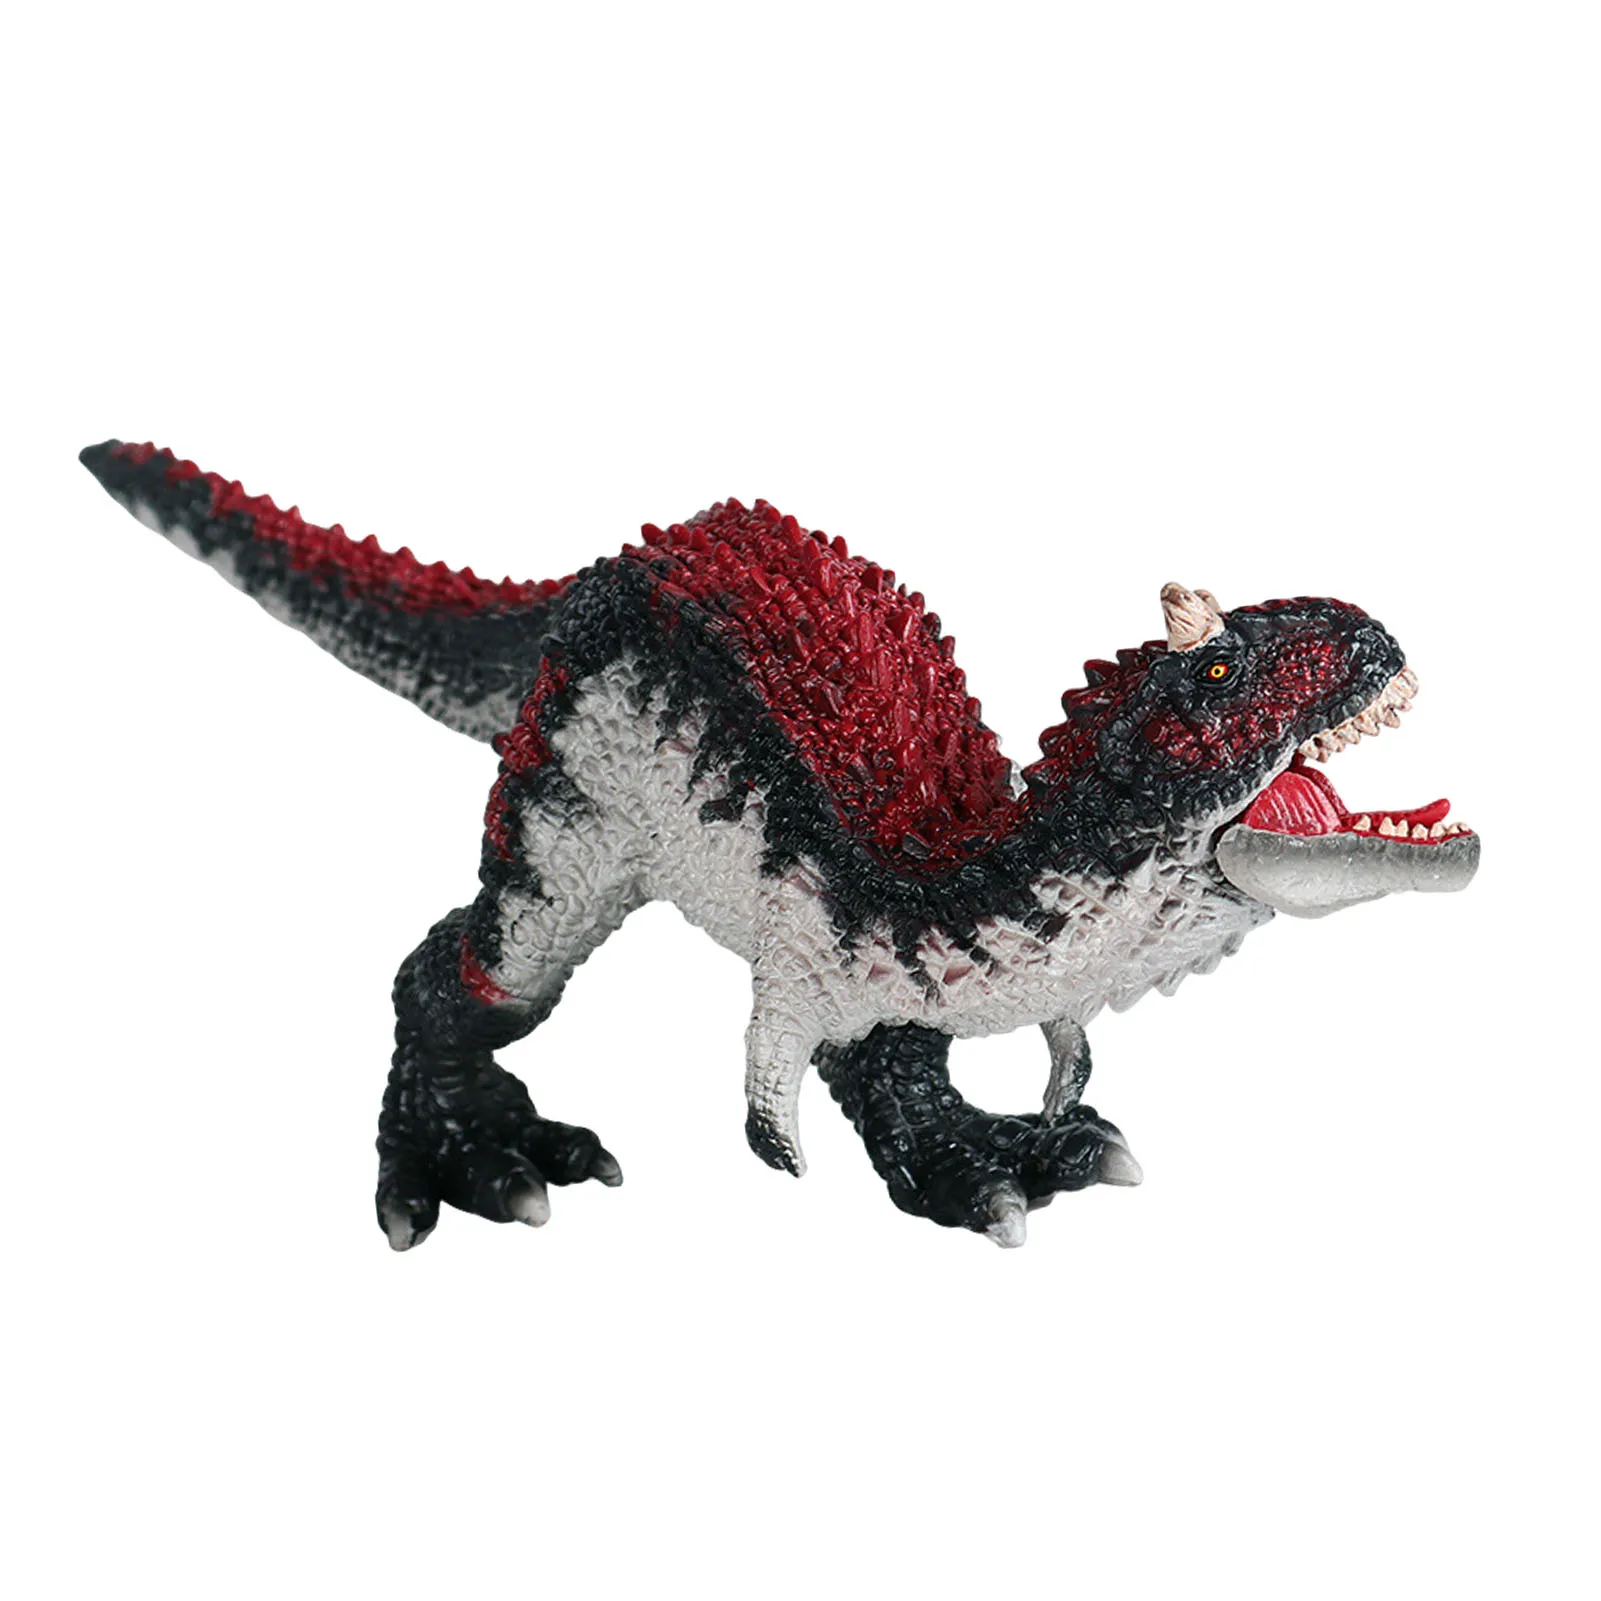 

Имитация Динозавра, игрушка, модель динозавра Юрского периода, Carnotaurus, игрушки для детей, большой искусственный орнамент, игрушка для мальчи...